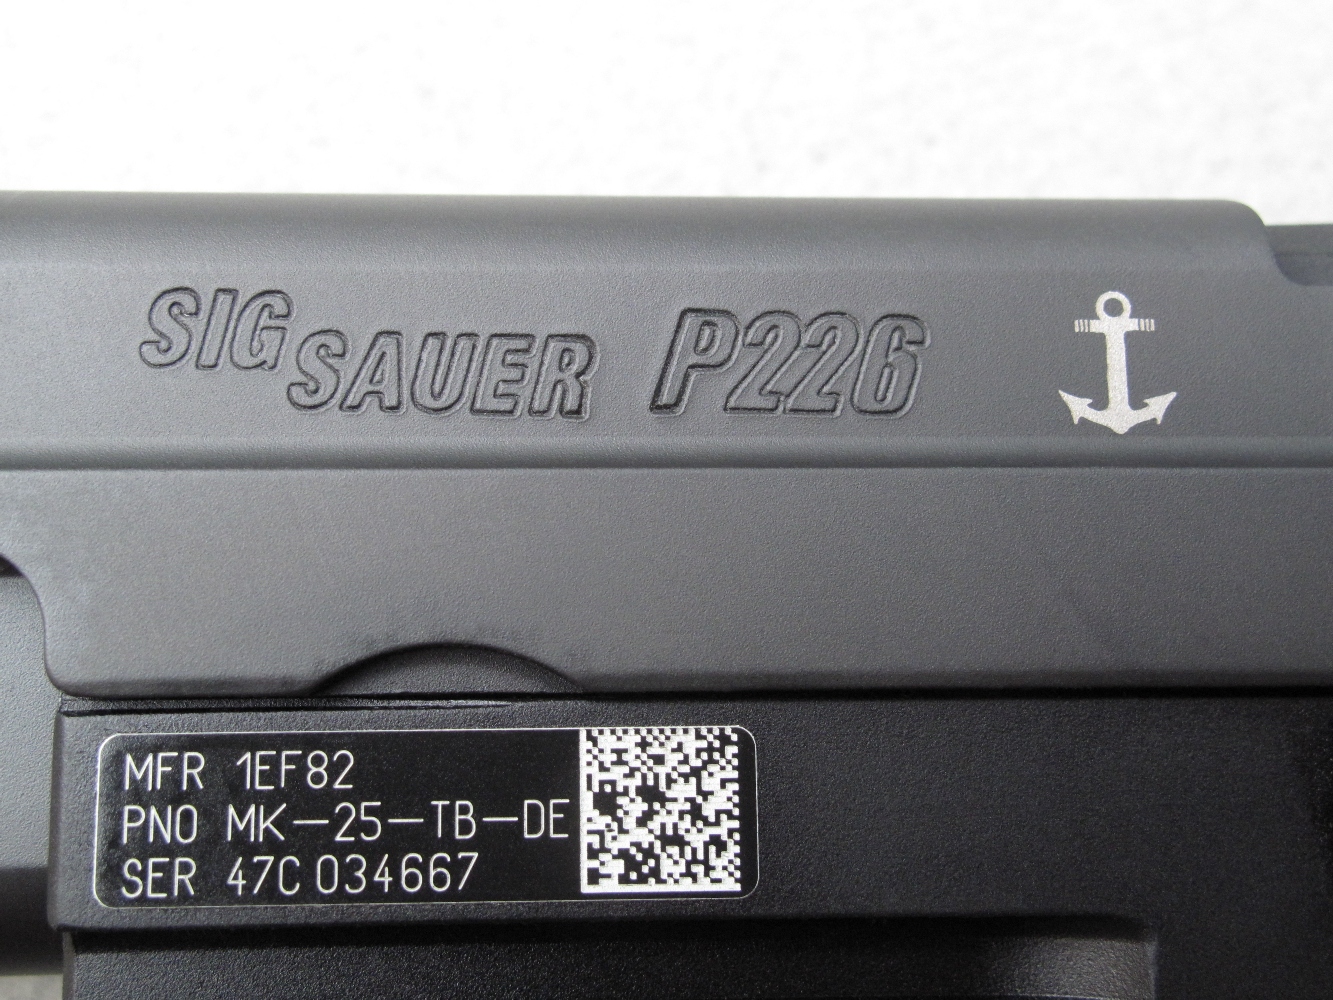 Le nom du fabricant et la dénomination du pistolet sont gravés sur le côté gauche de la culasse à glissière, accompagnés par la représentation d’une ancre de bateau évoquant l’adoption de ce modèle par les Navy SEALs, les forces spéciales de la marine de guerre des États-Unis. L’intrigante étiquette qui orne la carcasse comporte un code-barres 2-D Datamatrix destiné à faciliter l'inventaire des armes dans les arsenaux militaires.